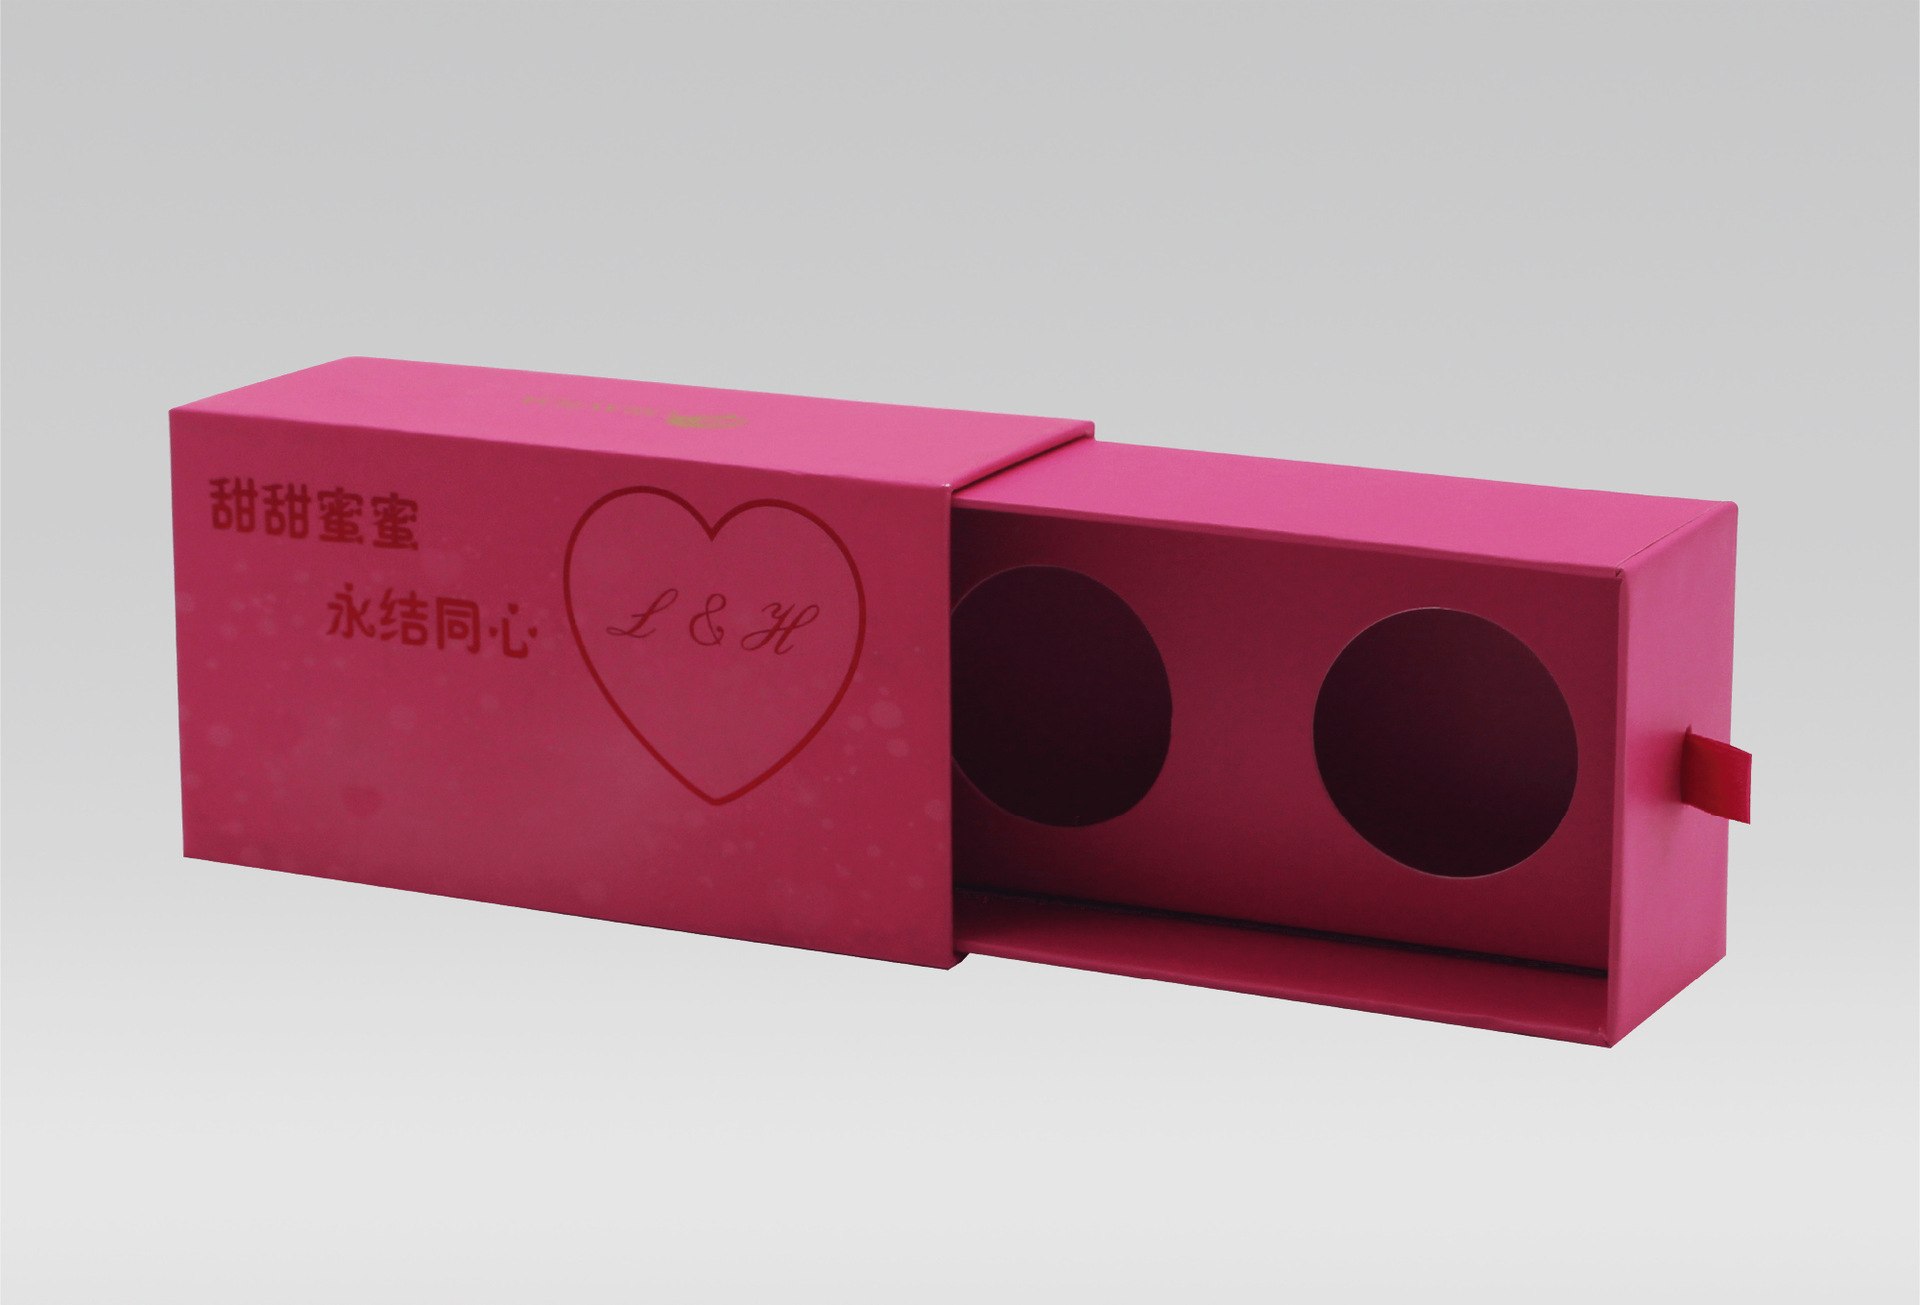 上海礼盒包装工厂 产品包装盒礼品包装盒定制设计个性化包装盒